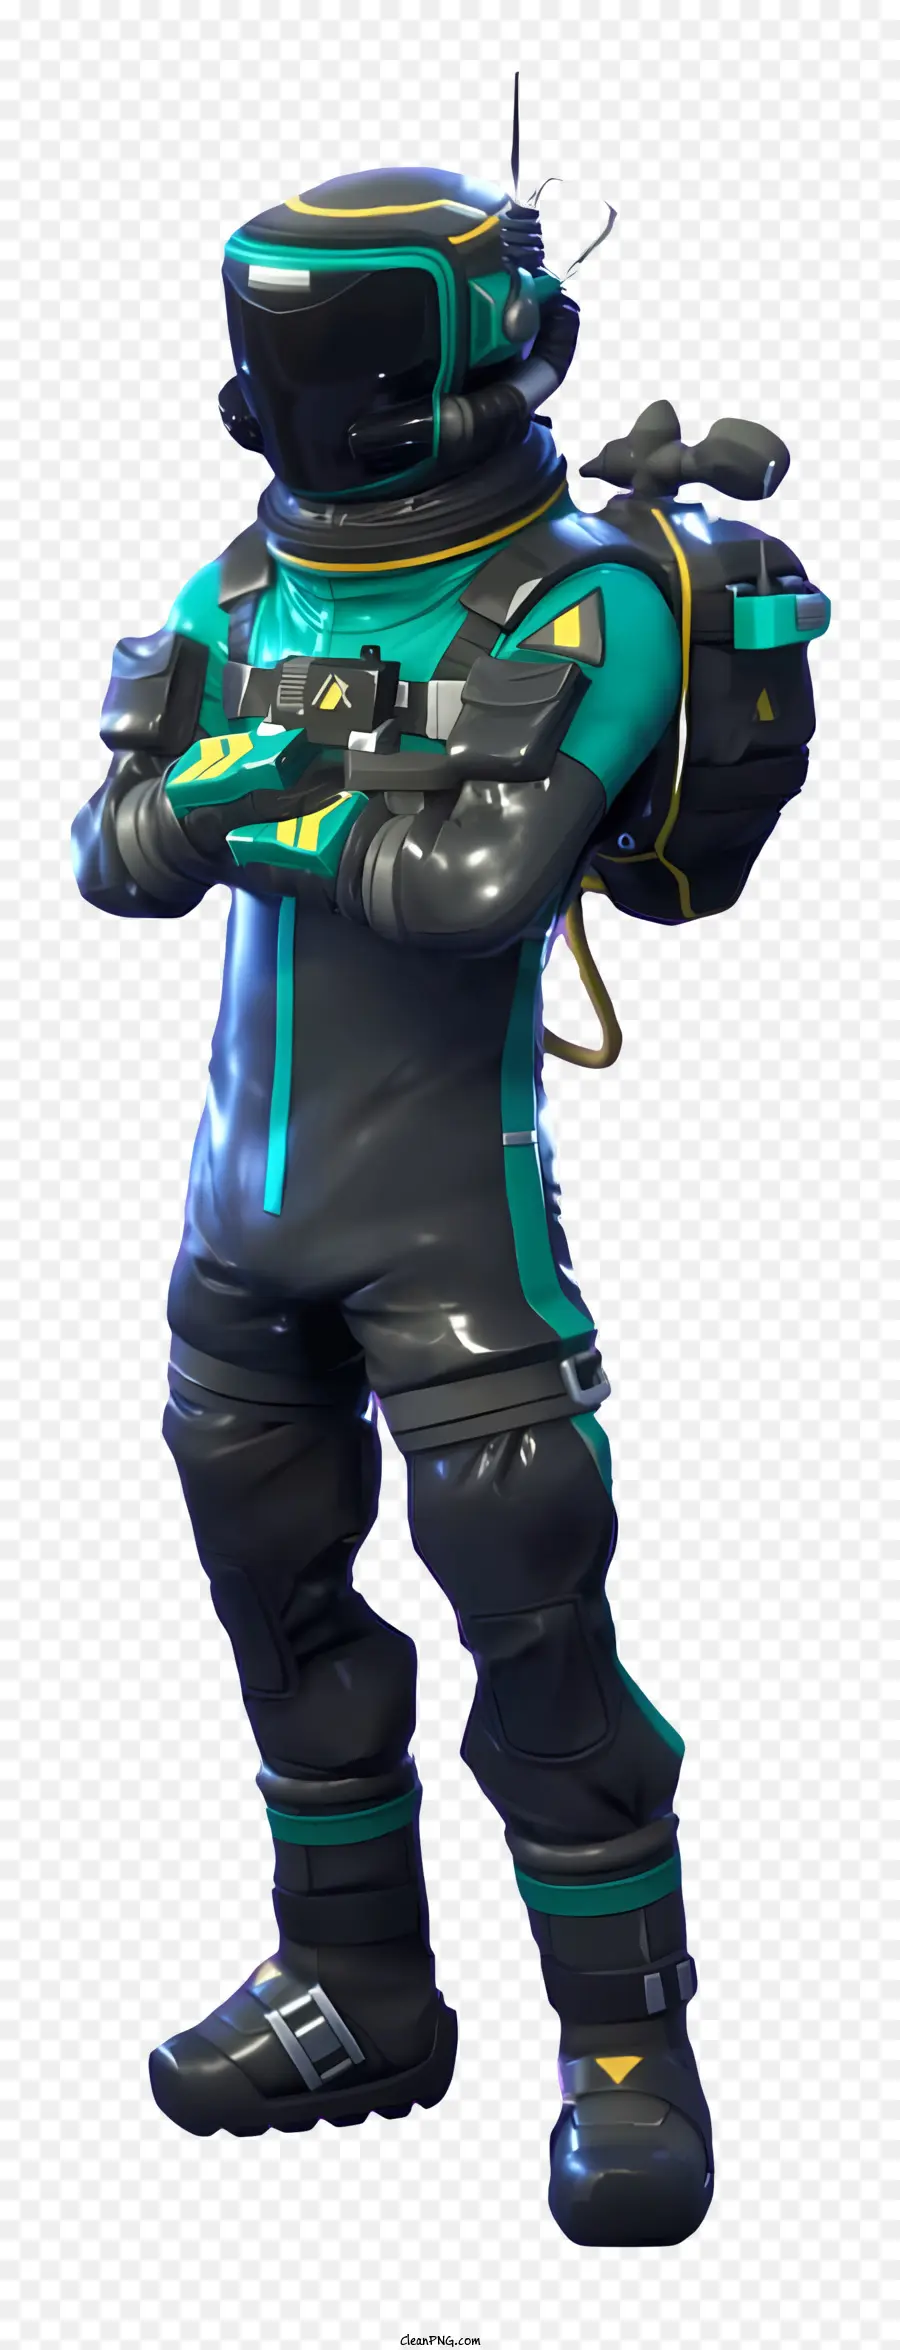 Fortnite - Người đàn ông mặc bộ đồ scuba đen và xanh